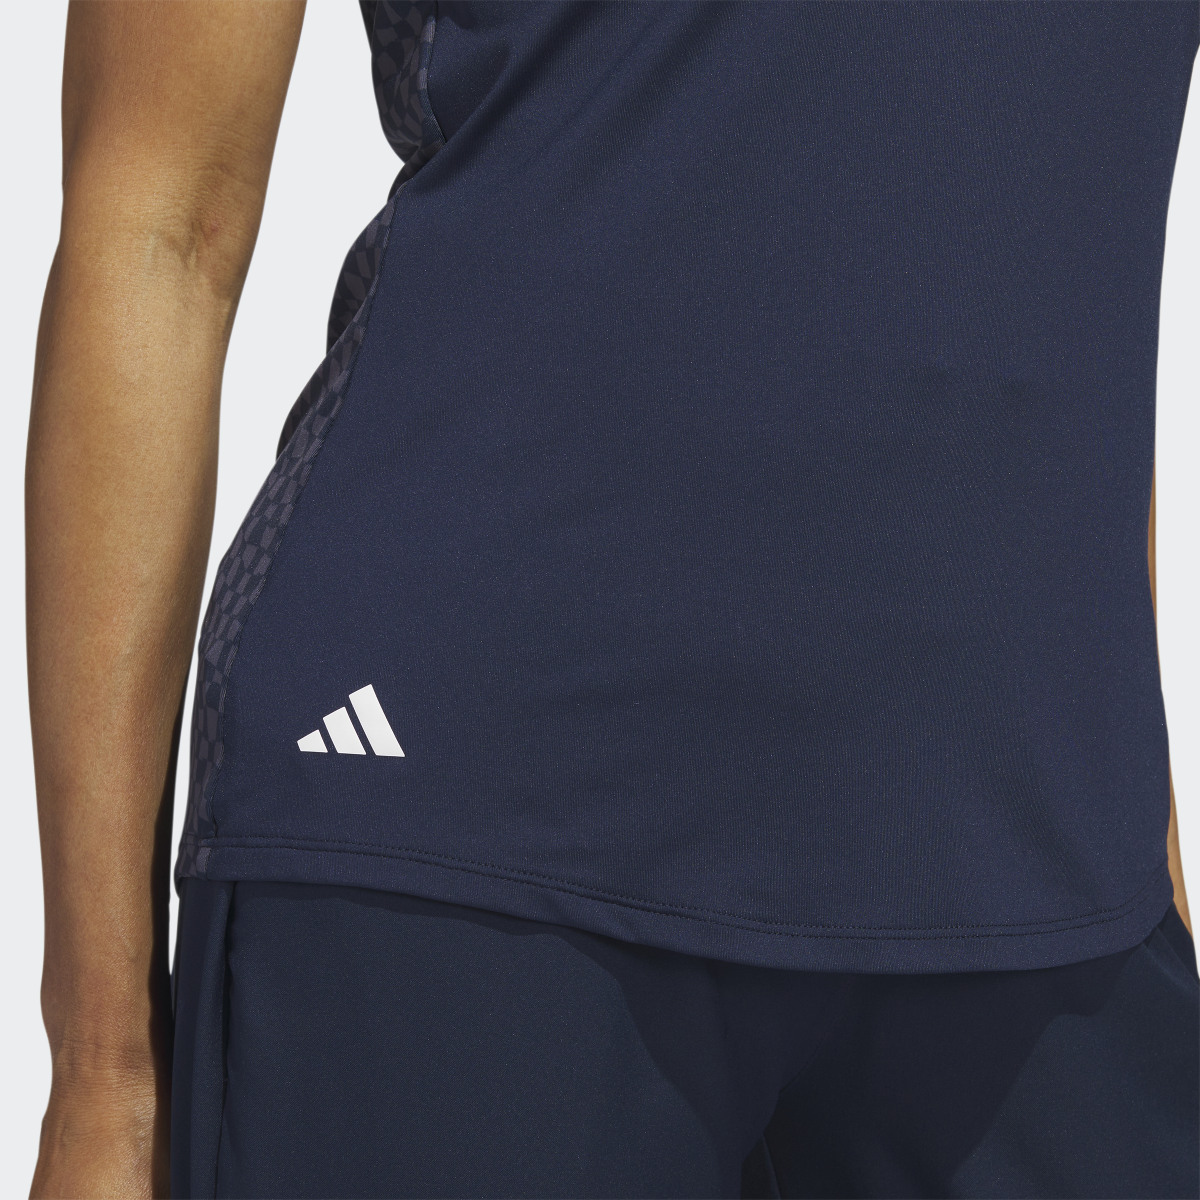 Adidas Ultimate365 Sleeveless Golf Polo Shirt. 6